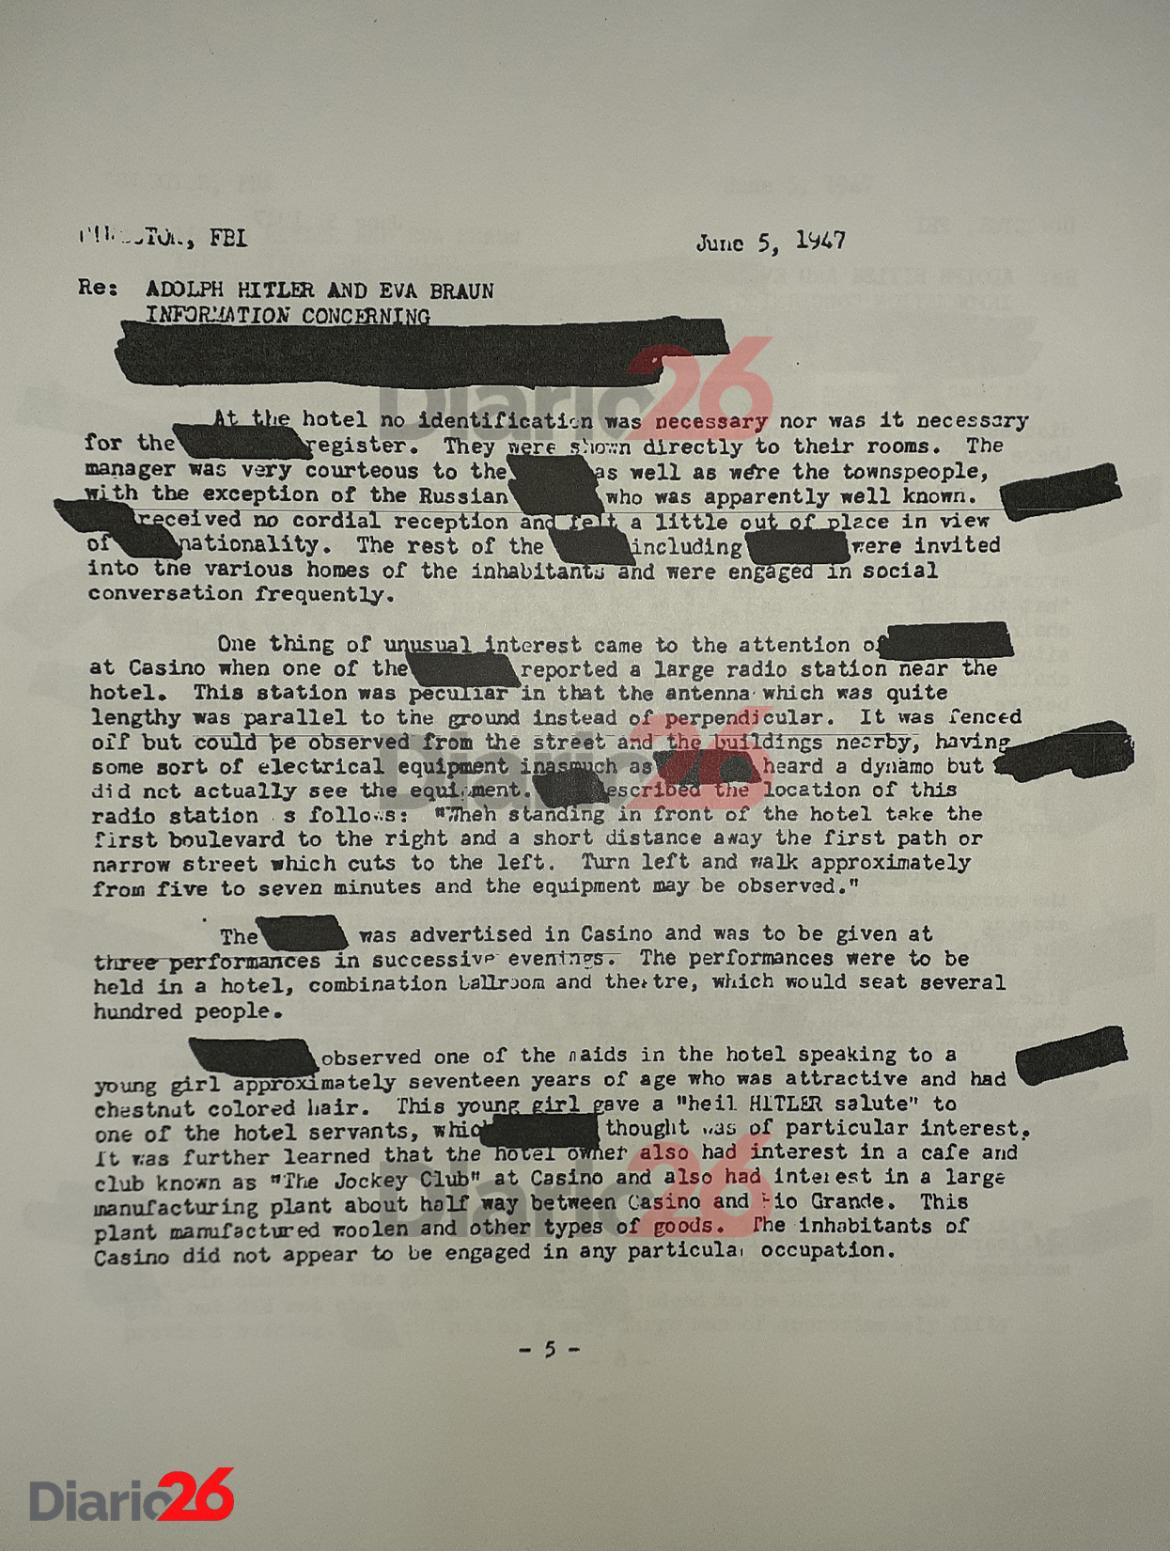 Adolf Hitler en Brasil, Hotel Atlántico, Cassino, documento desclasificado del FBI de 1947 - 05